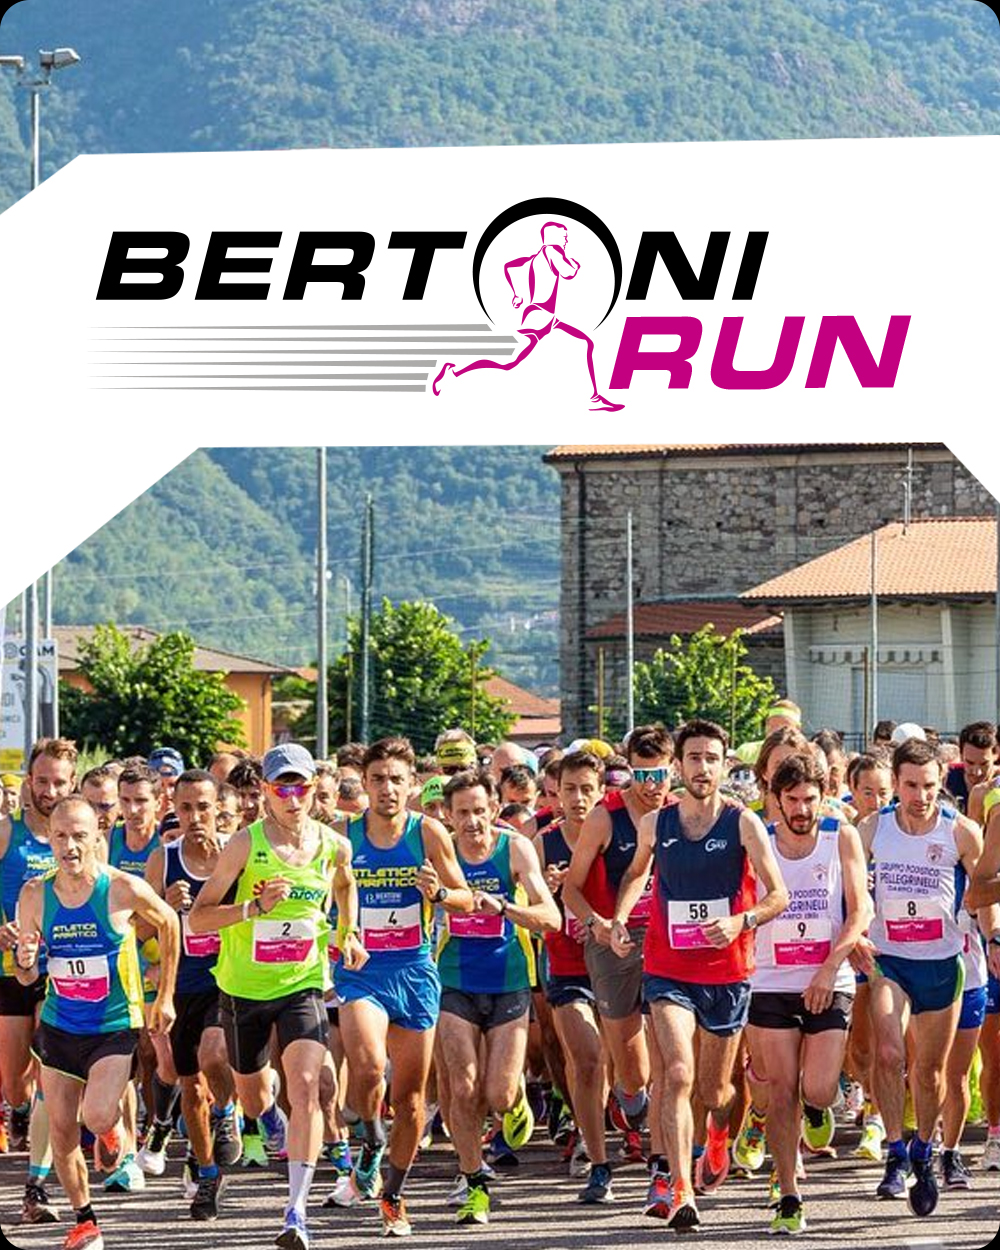 Bertoni Run